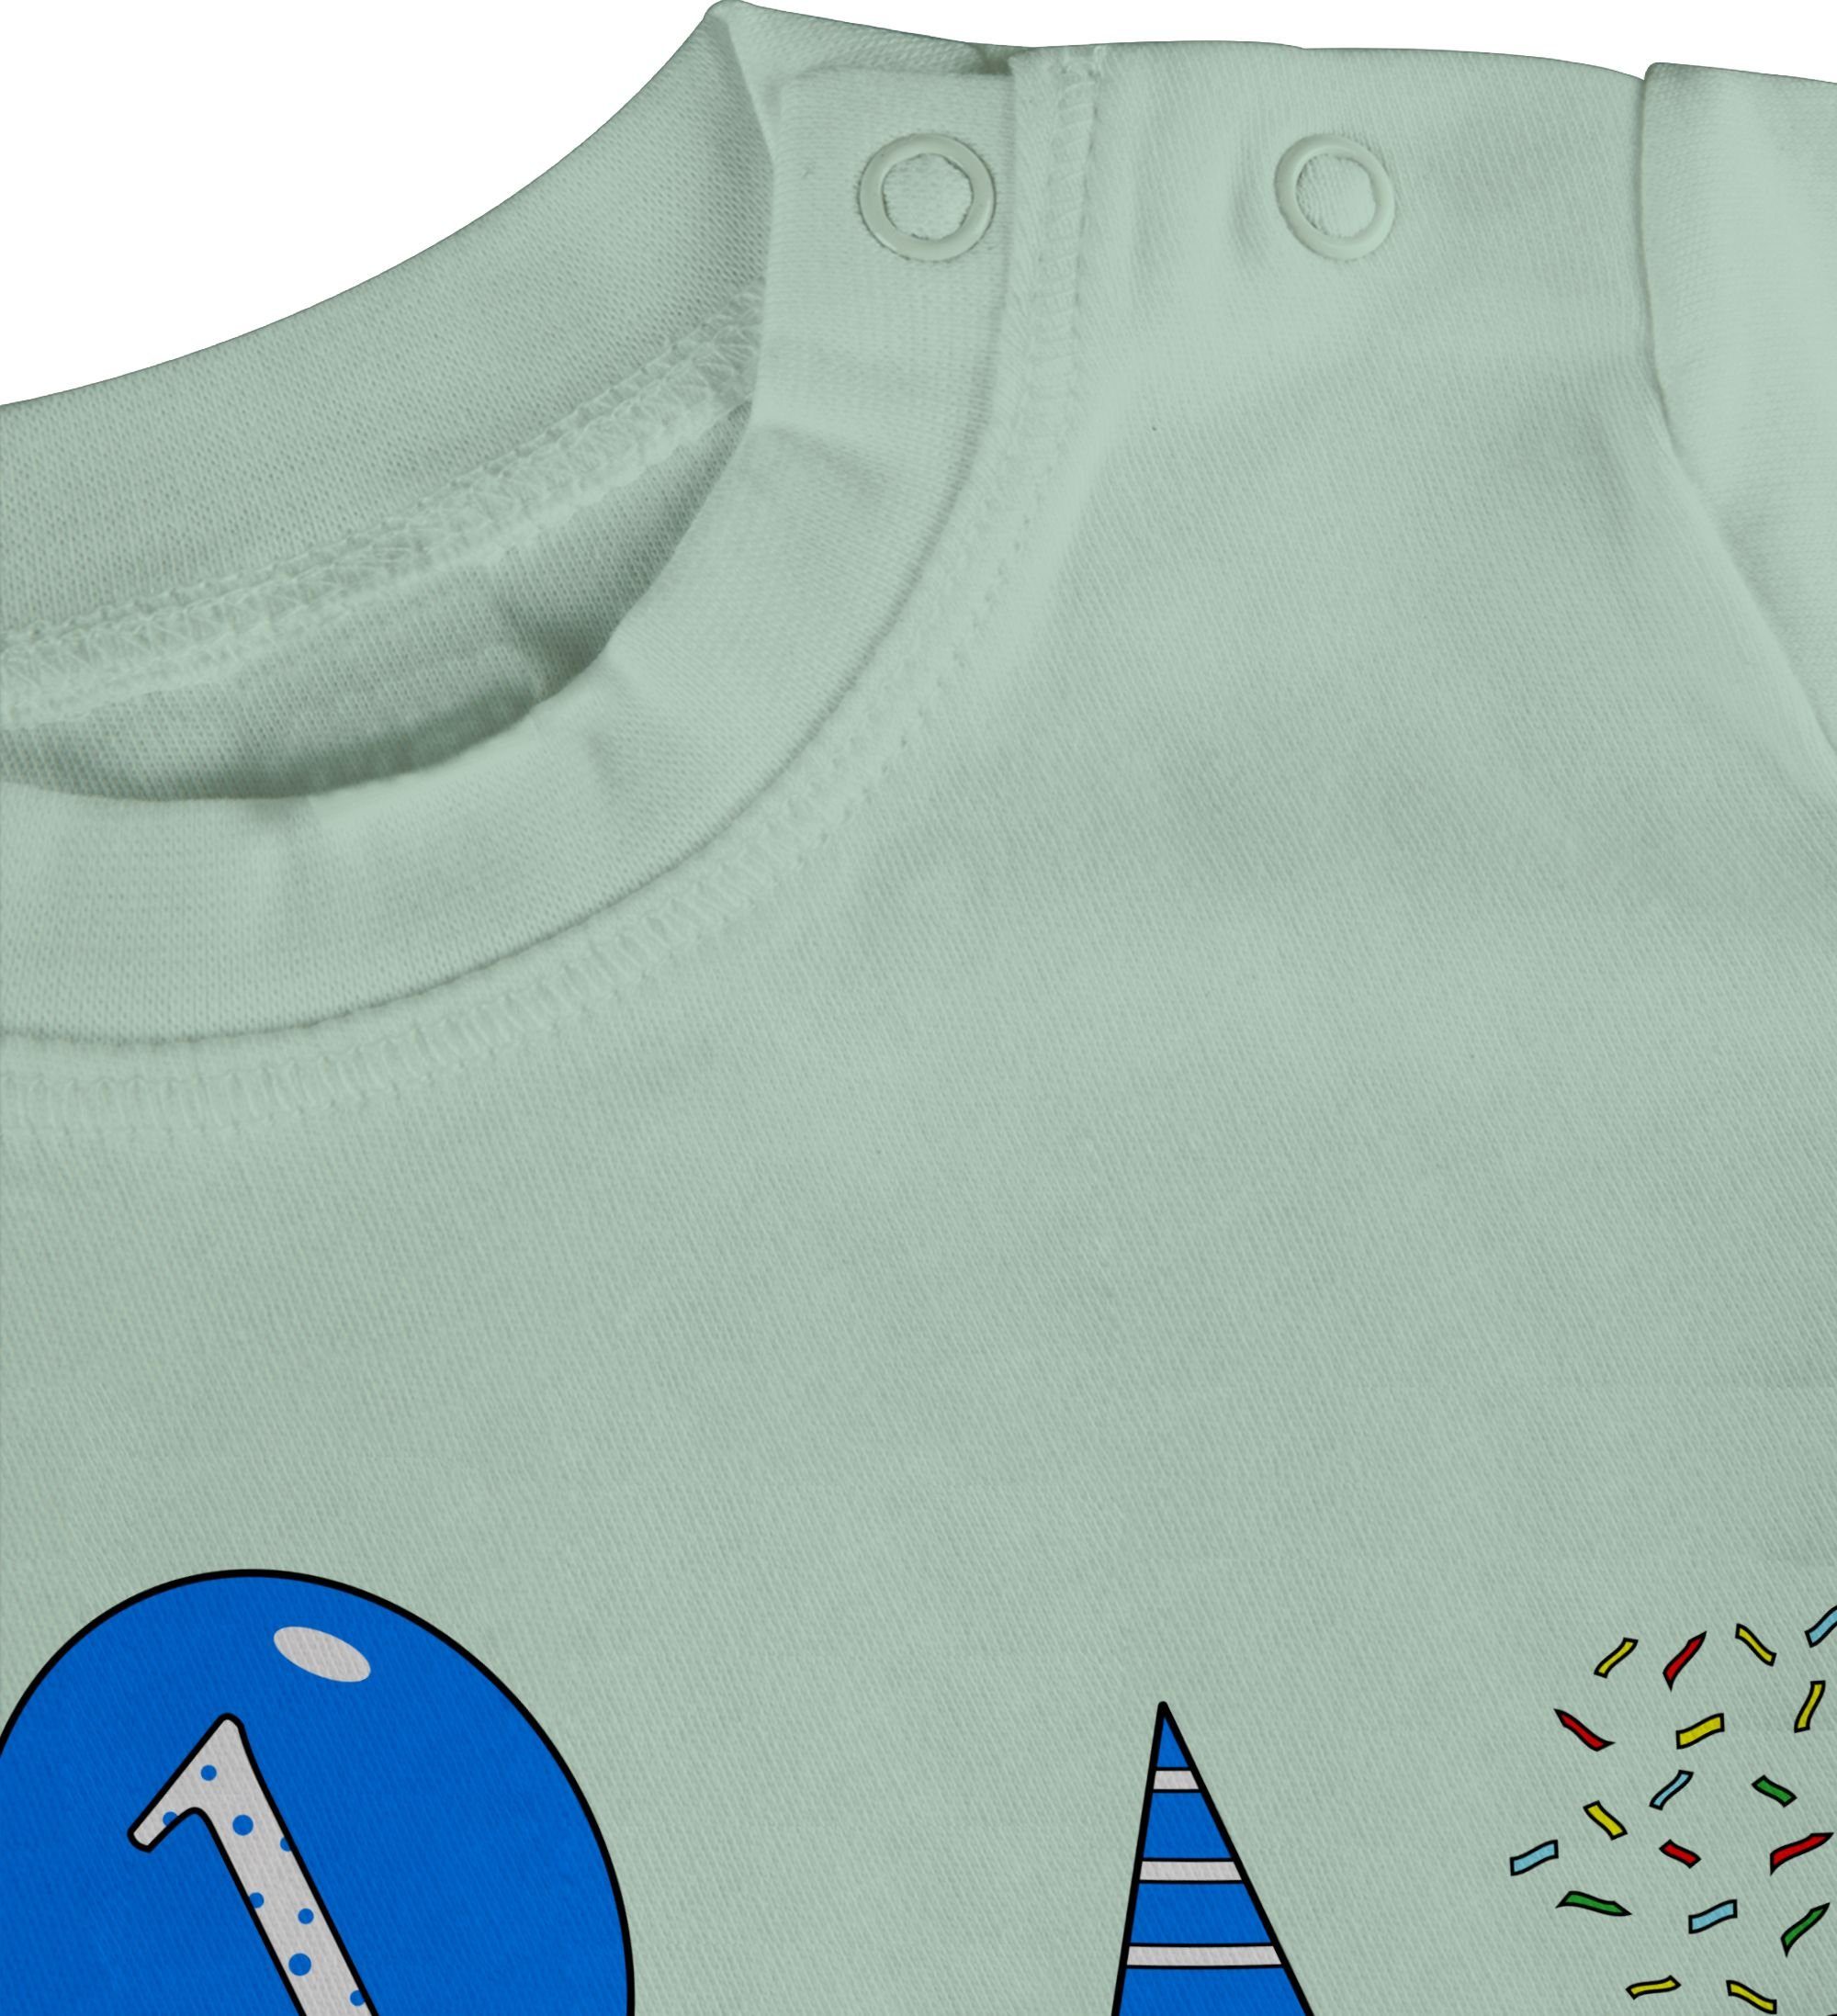 2 Mintgrün Blau - 1.Geburtstag - - für Pinguin Baby - Ballon Geburtstag Konfetti - Geschenk Babys Shirtracer T-Shirt